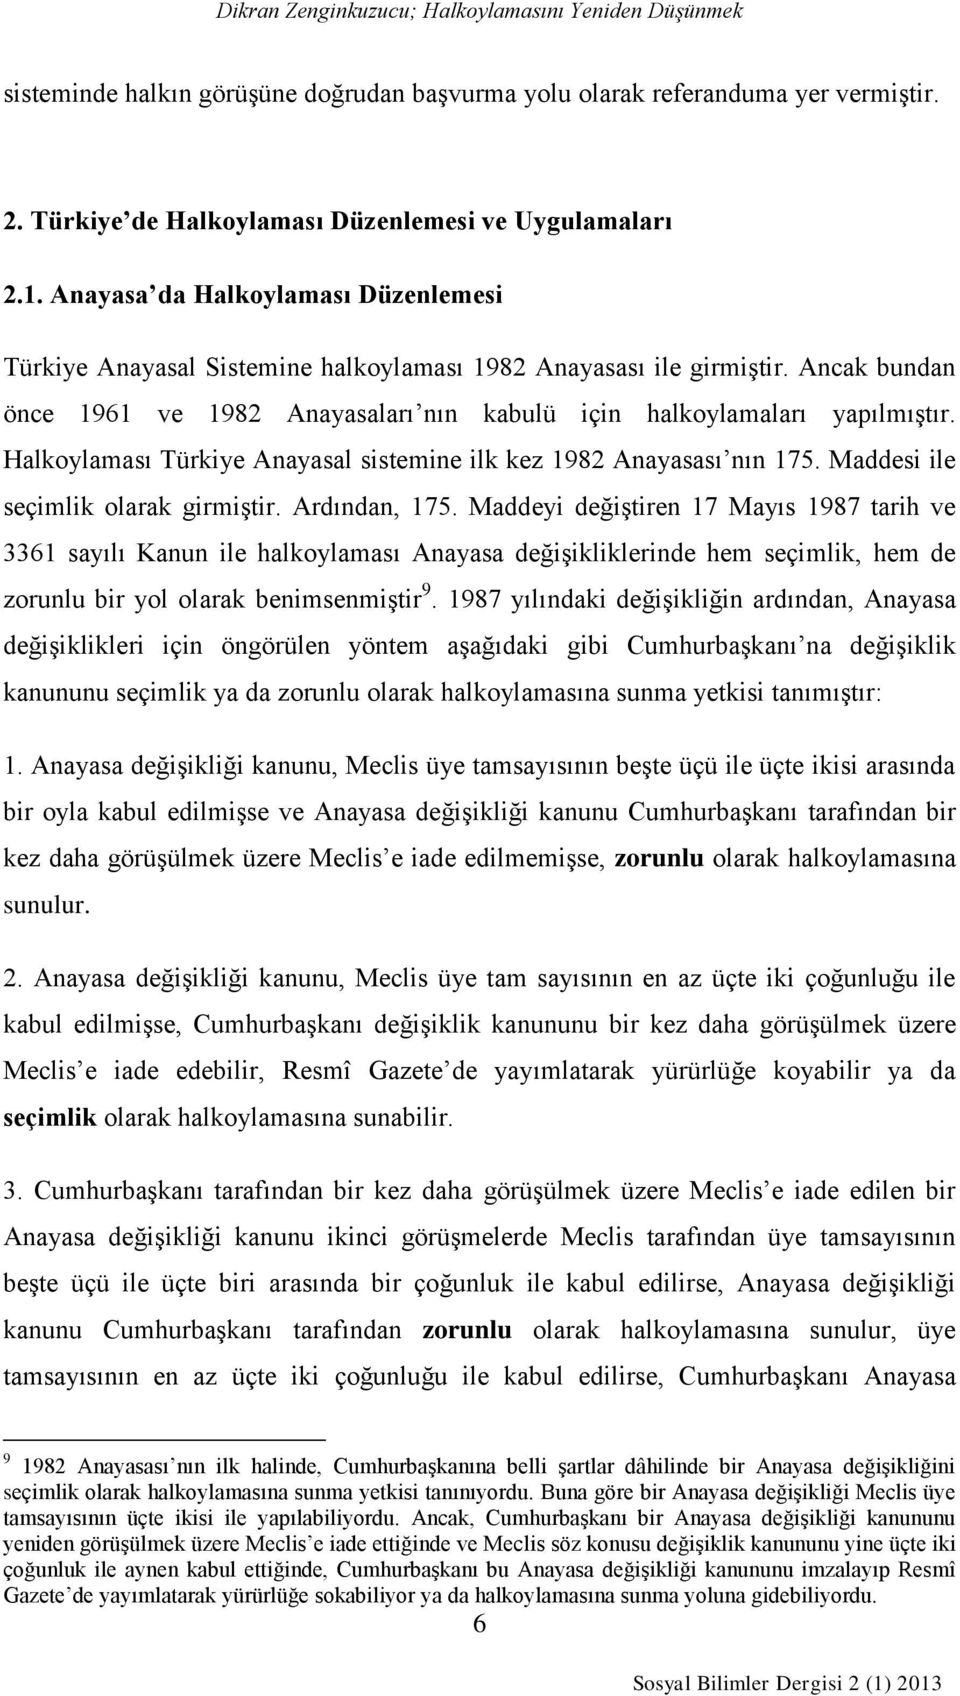 Halkoylaması Türkiye Anayasal sistemine ilk kez 1982 Anayasası nın 175. Maddesi ile seçimlik olarak girmiştir. Ardından, 175.